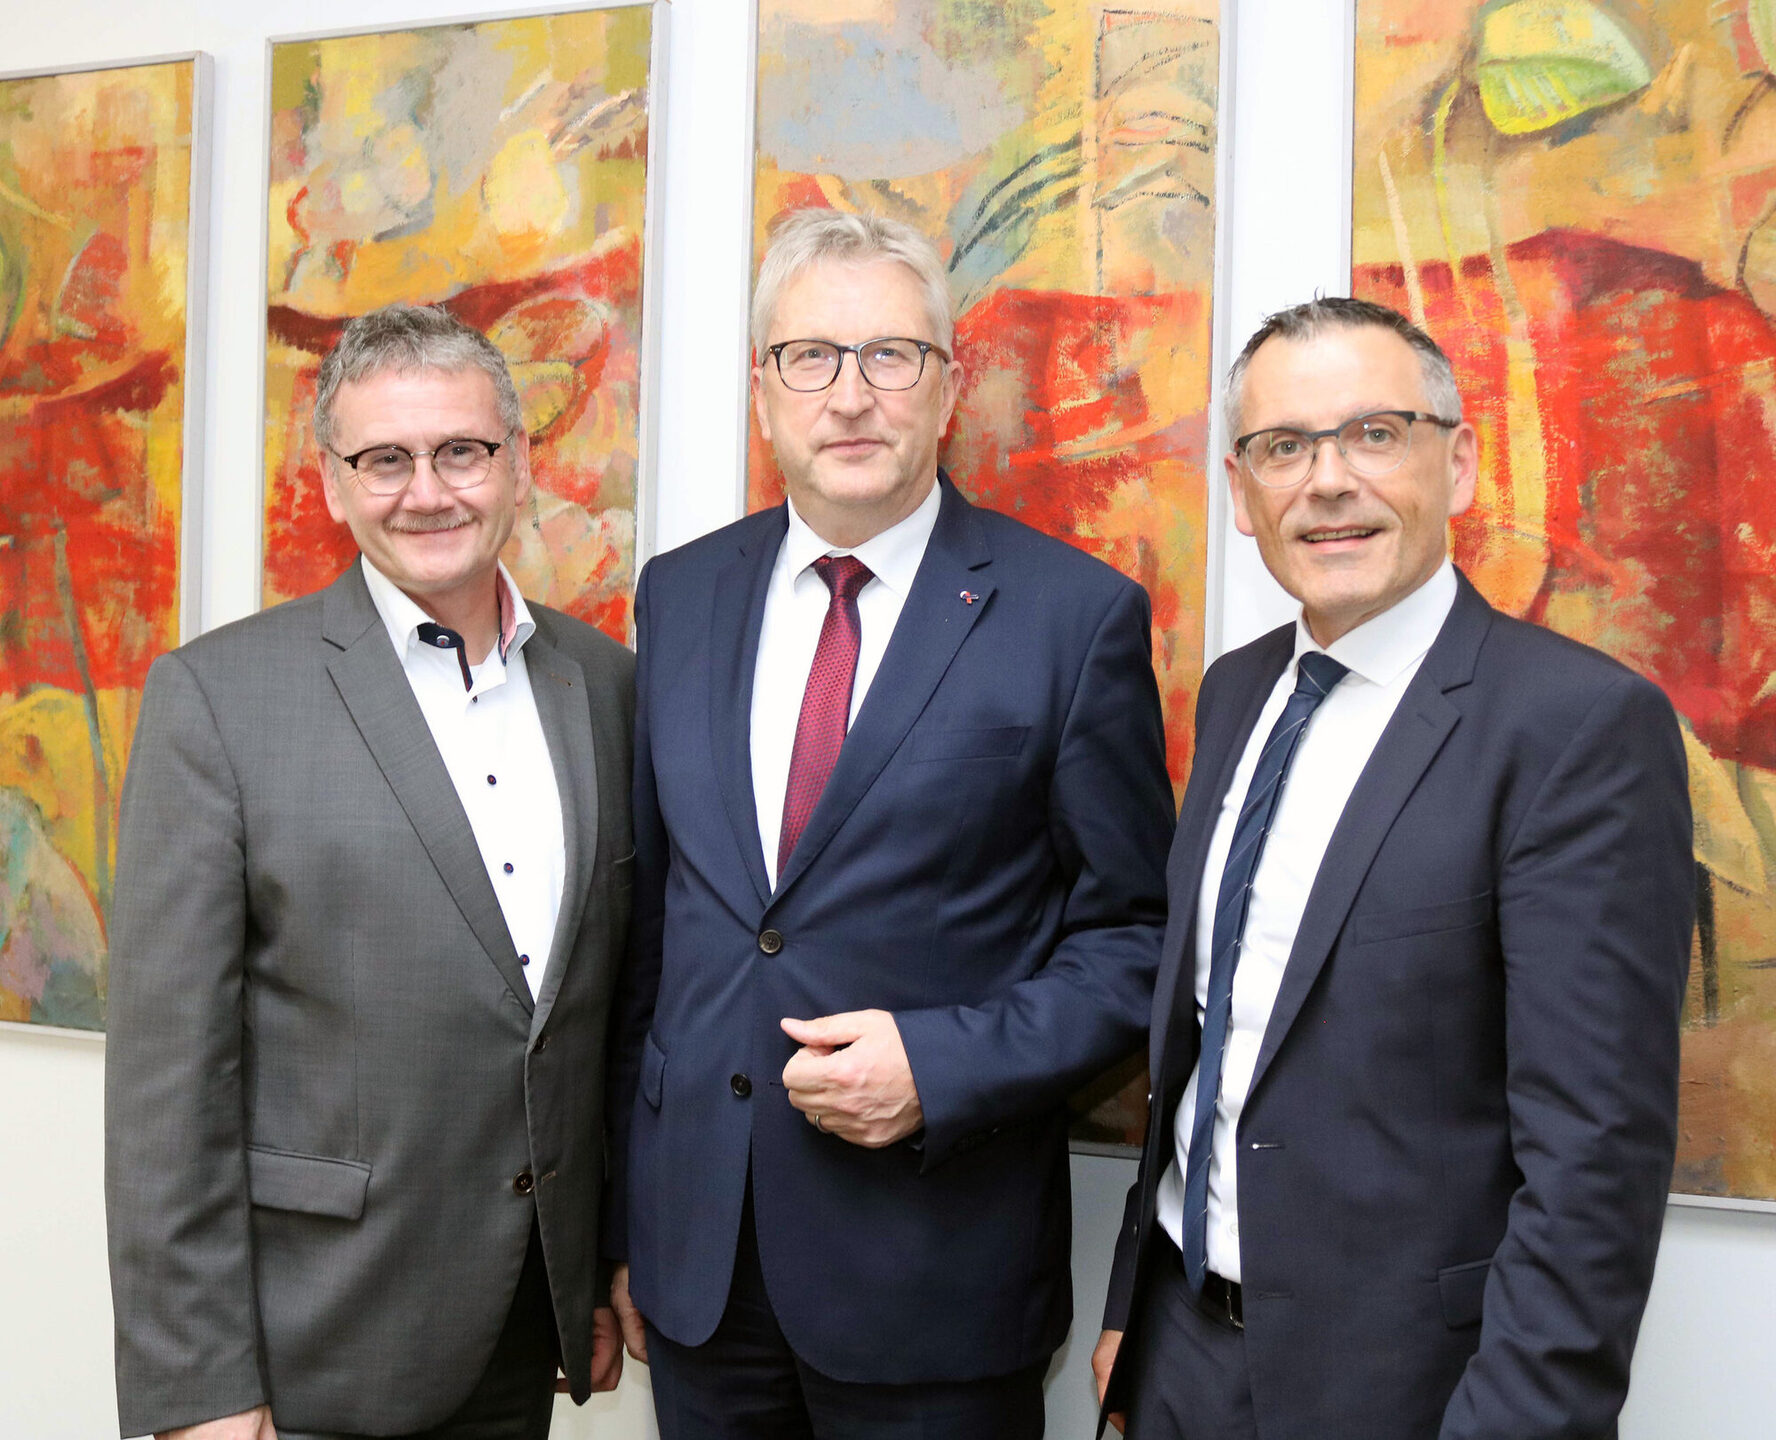 Auftakt zu regelmäßigen Gesprächen: Der neue Regierungspräsident Hermann-Josef Klüber traf sich im Kreishaus mit Landrat Uwe Schmidt (links) und dem Ersten Kreisbeigeordneten Andreas Siebert (rechts).